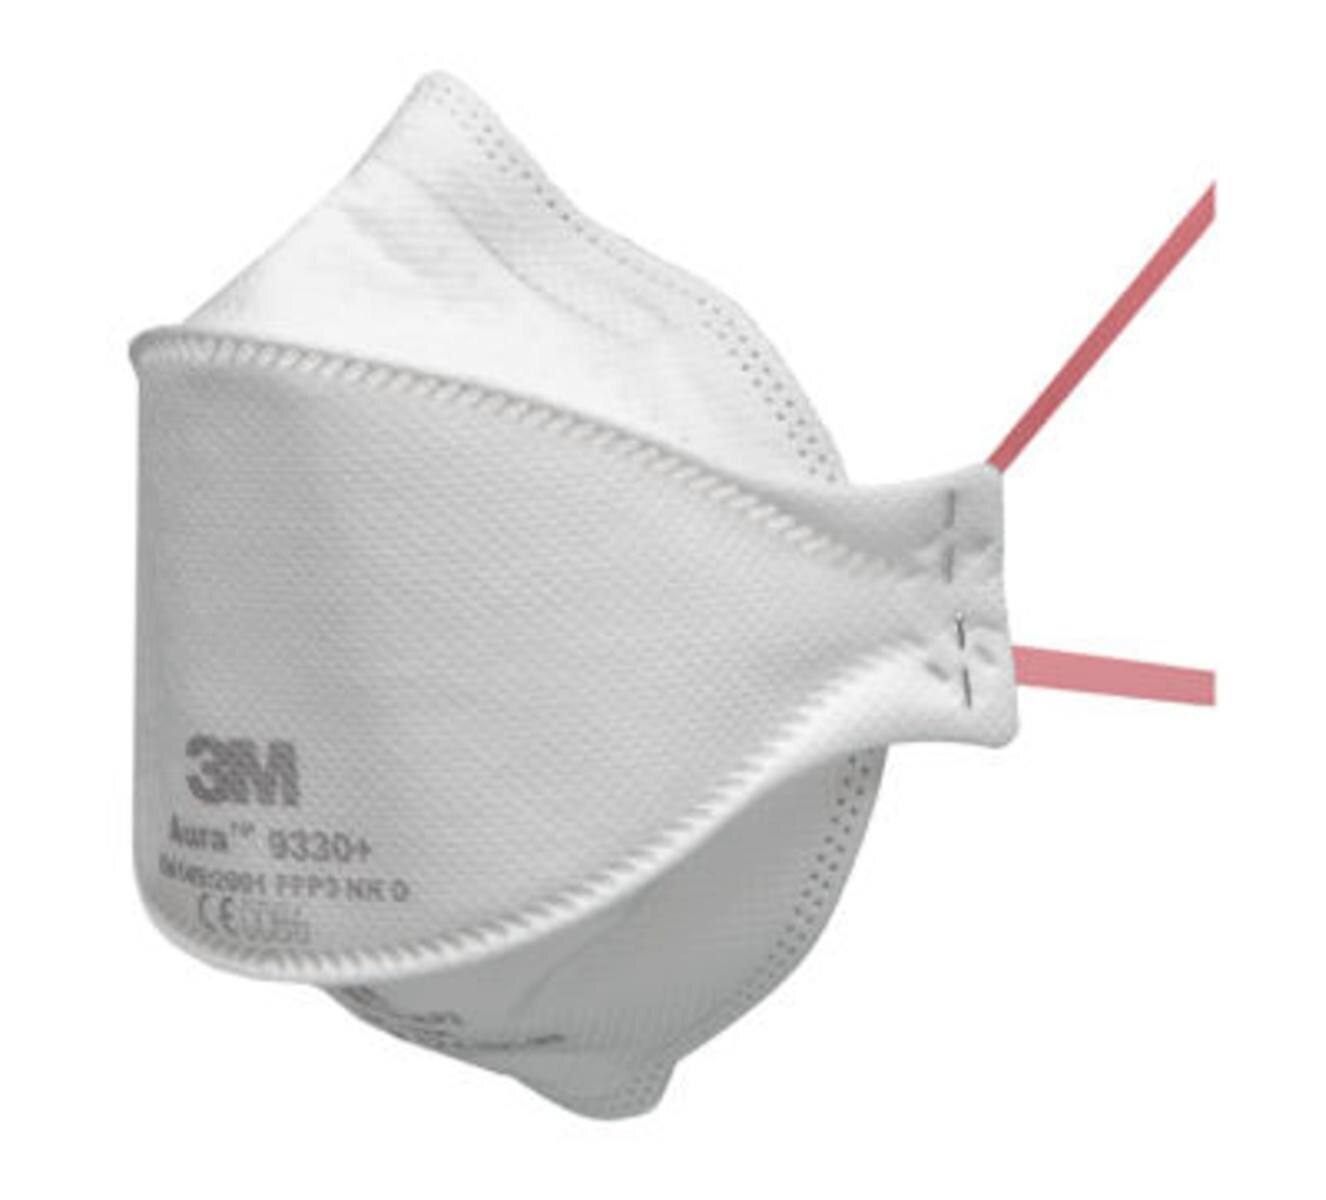 3M 9330 BV Aura Masque de protection respiratoire FFP3, jusqu'à 30 fois la valeur limite (emballage individuel hygiénique)